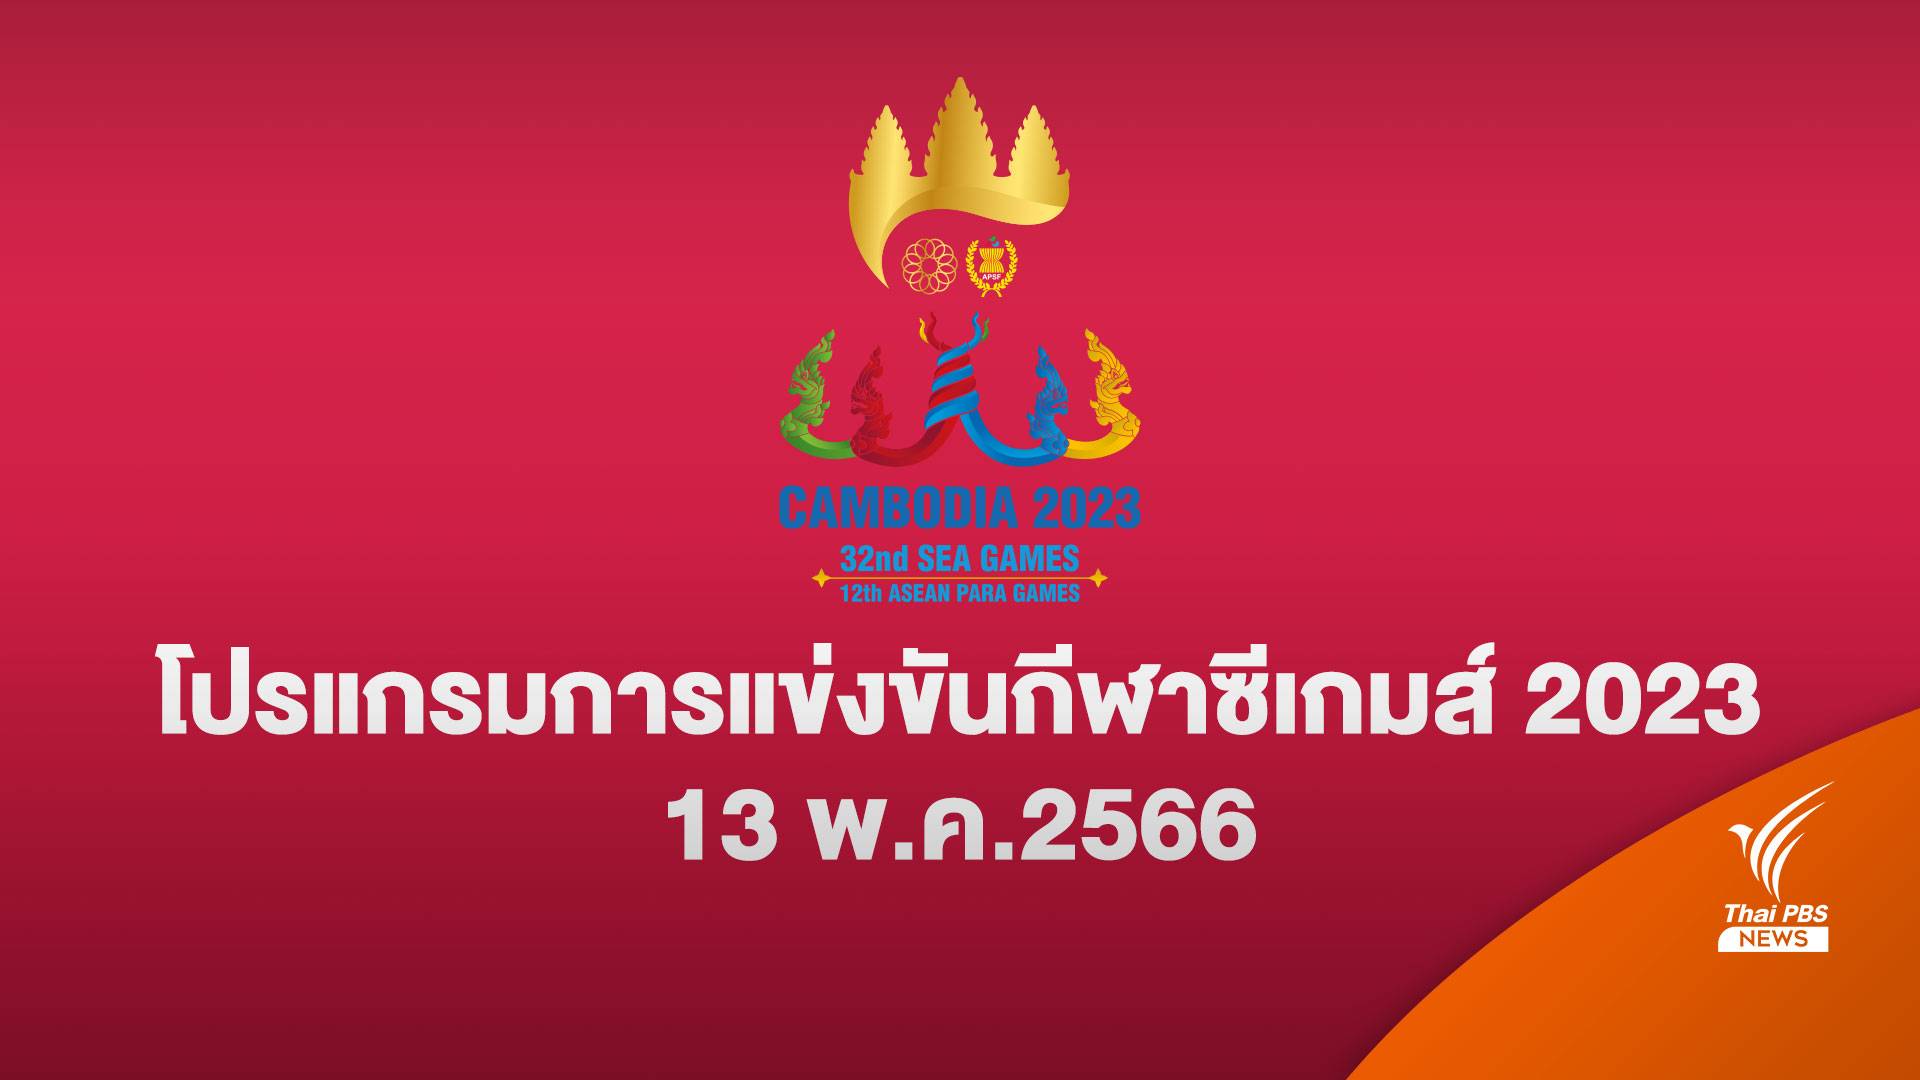 โปรแกรมแข่งขันซีเกมส์ 2023 ทัพนักกีฬาไทย 13 พ.ค. 2566